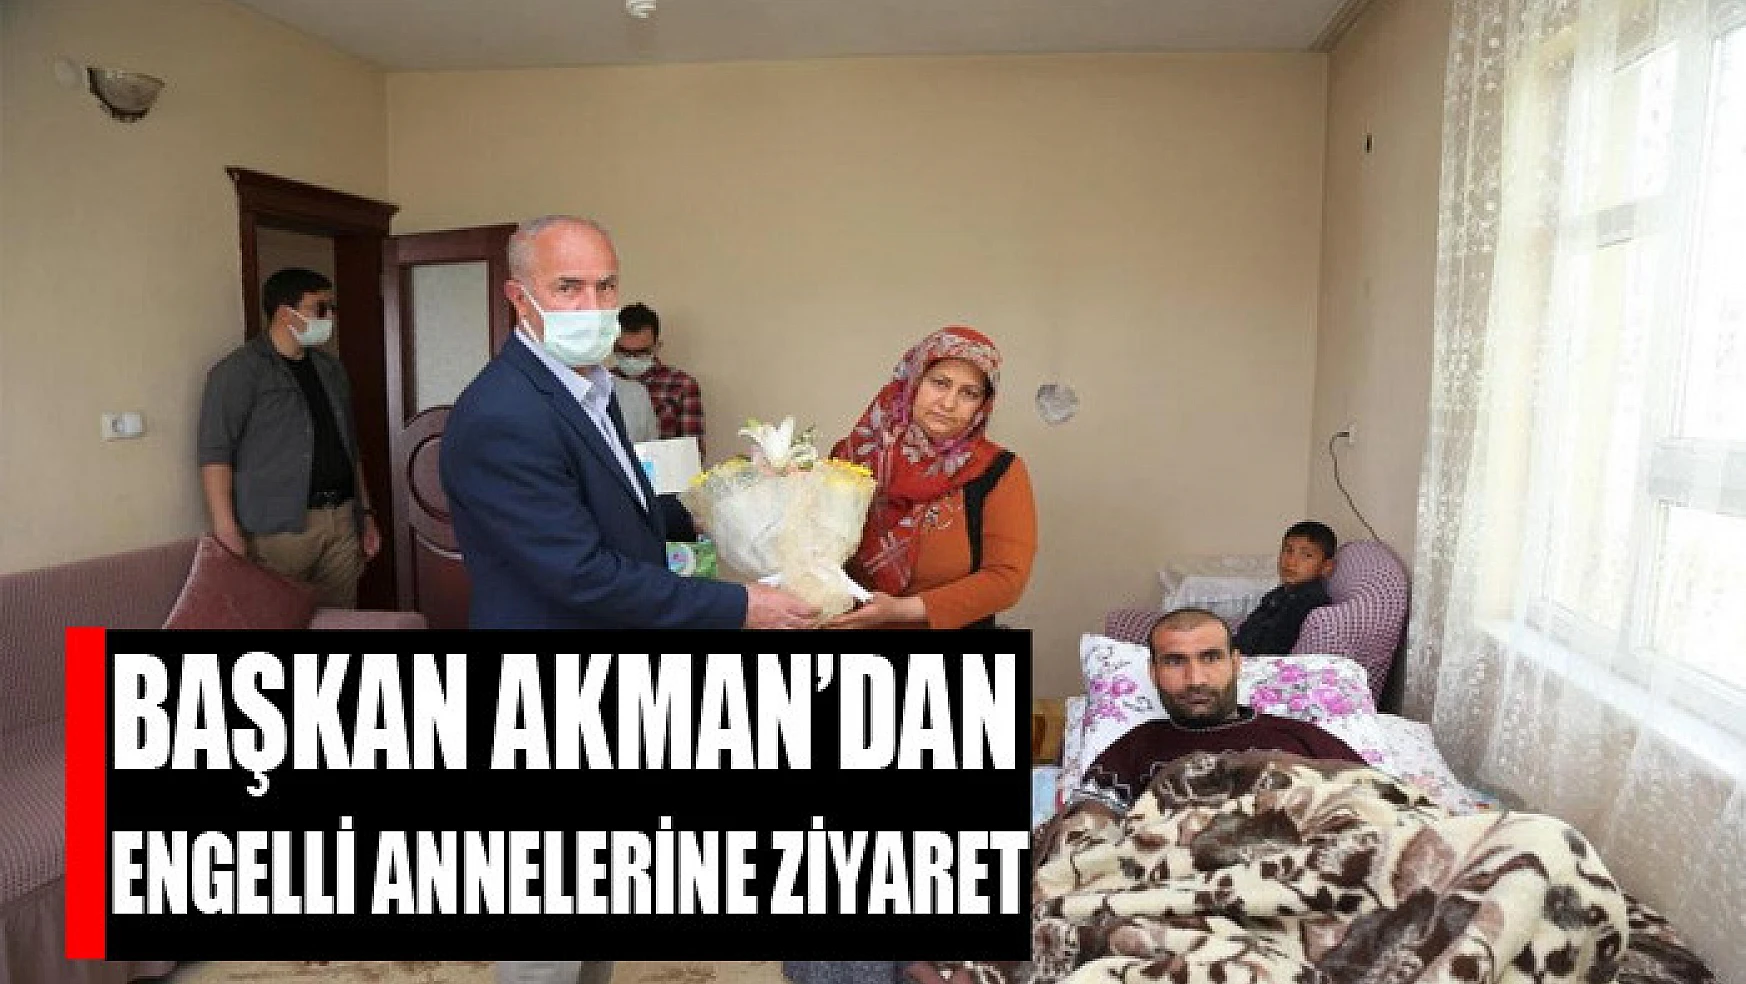 Başkan Akman'dan engelli annelerine ziyaret